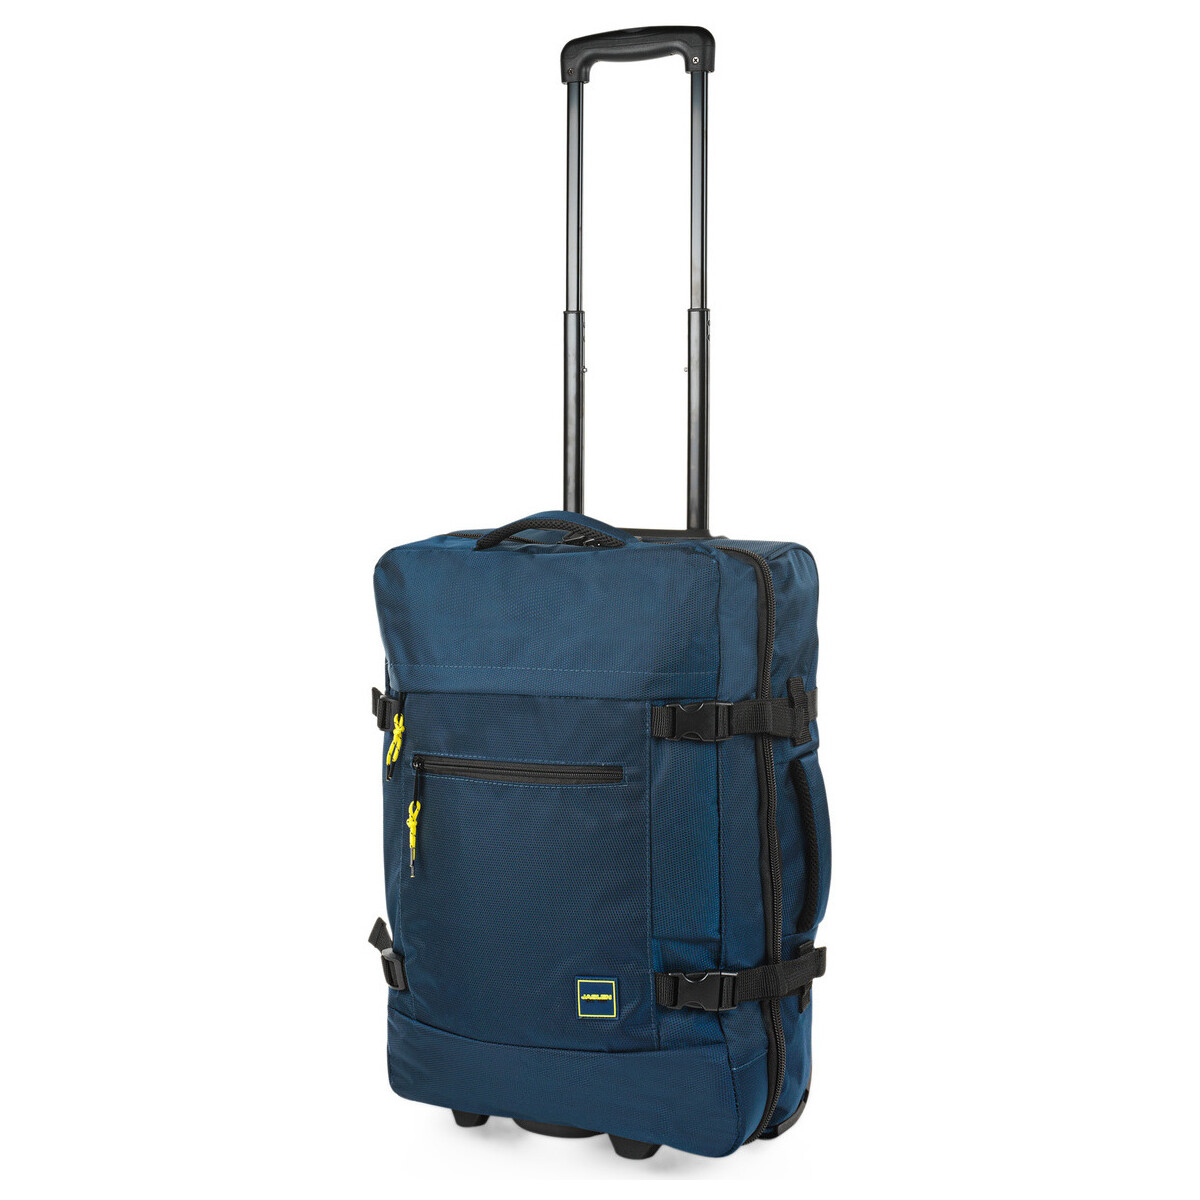 Taschen Reisetasche Jaslen Treviso Blau